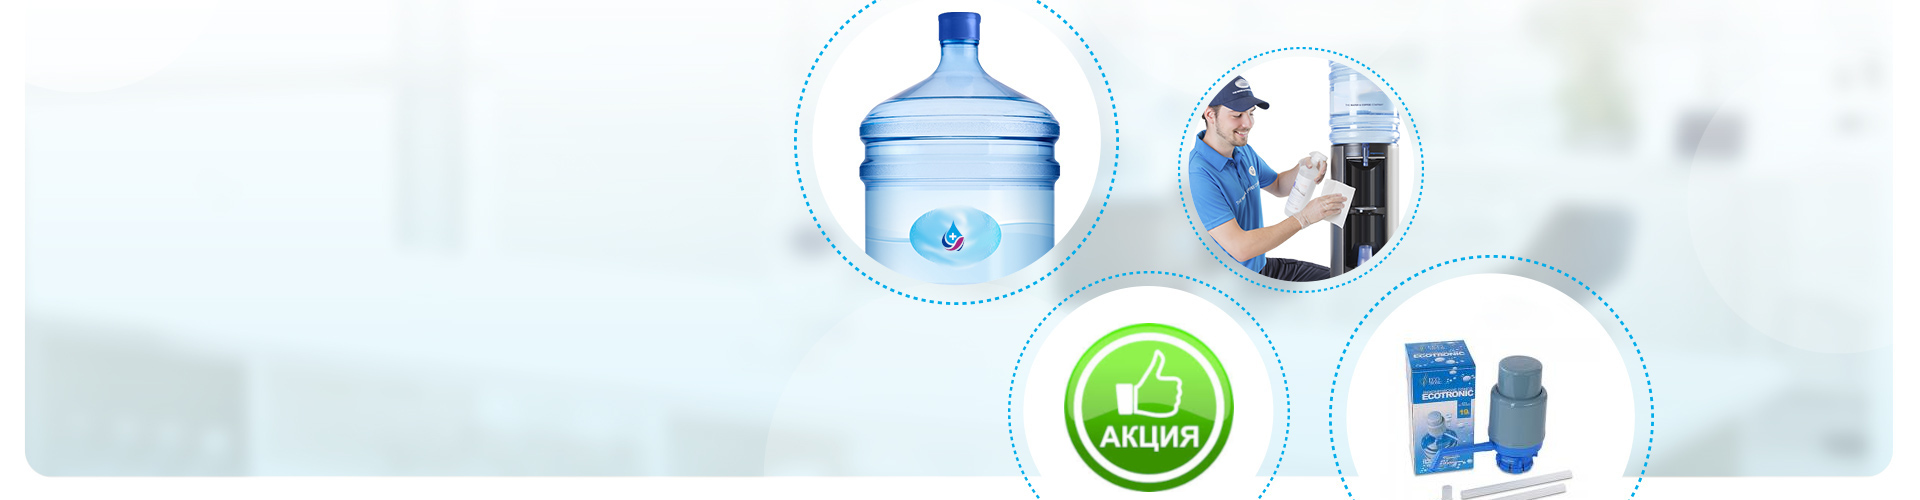 На фото чотири елементи: бутильована вода від Aqua Plus, працівник проводить обслуговування кулера, помпа та упаковка з помпою, зелений значок Акція